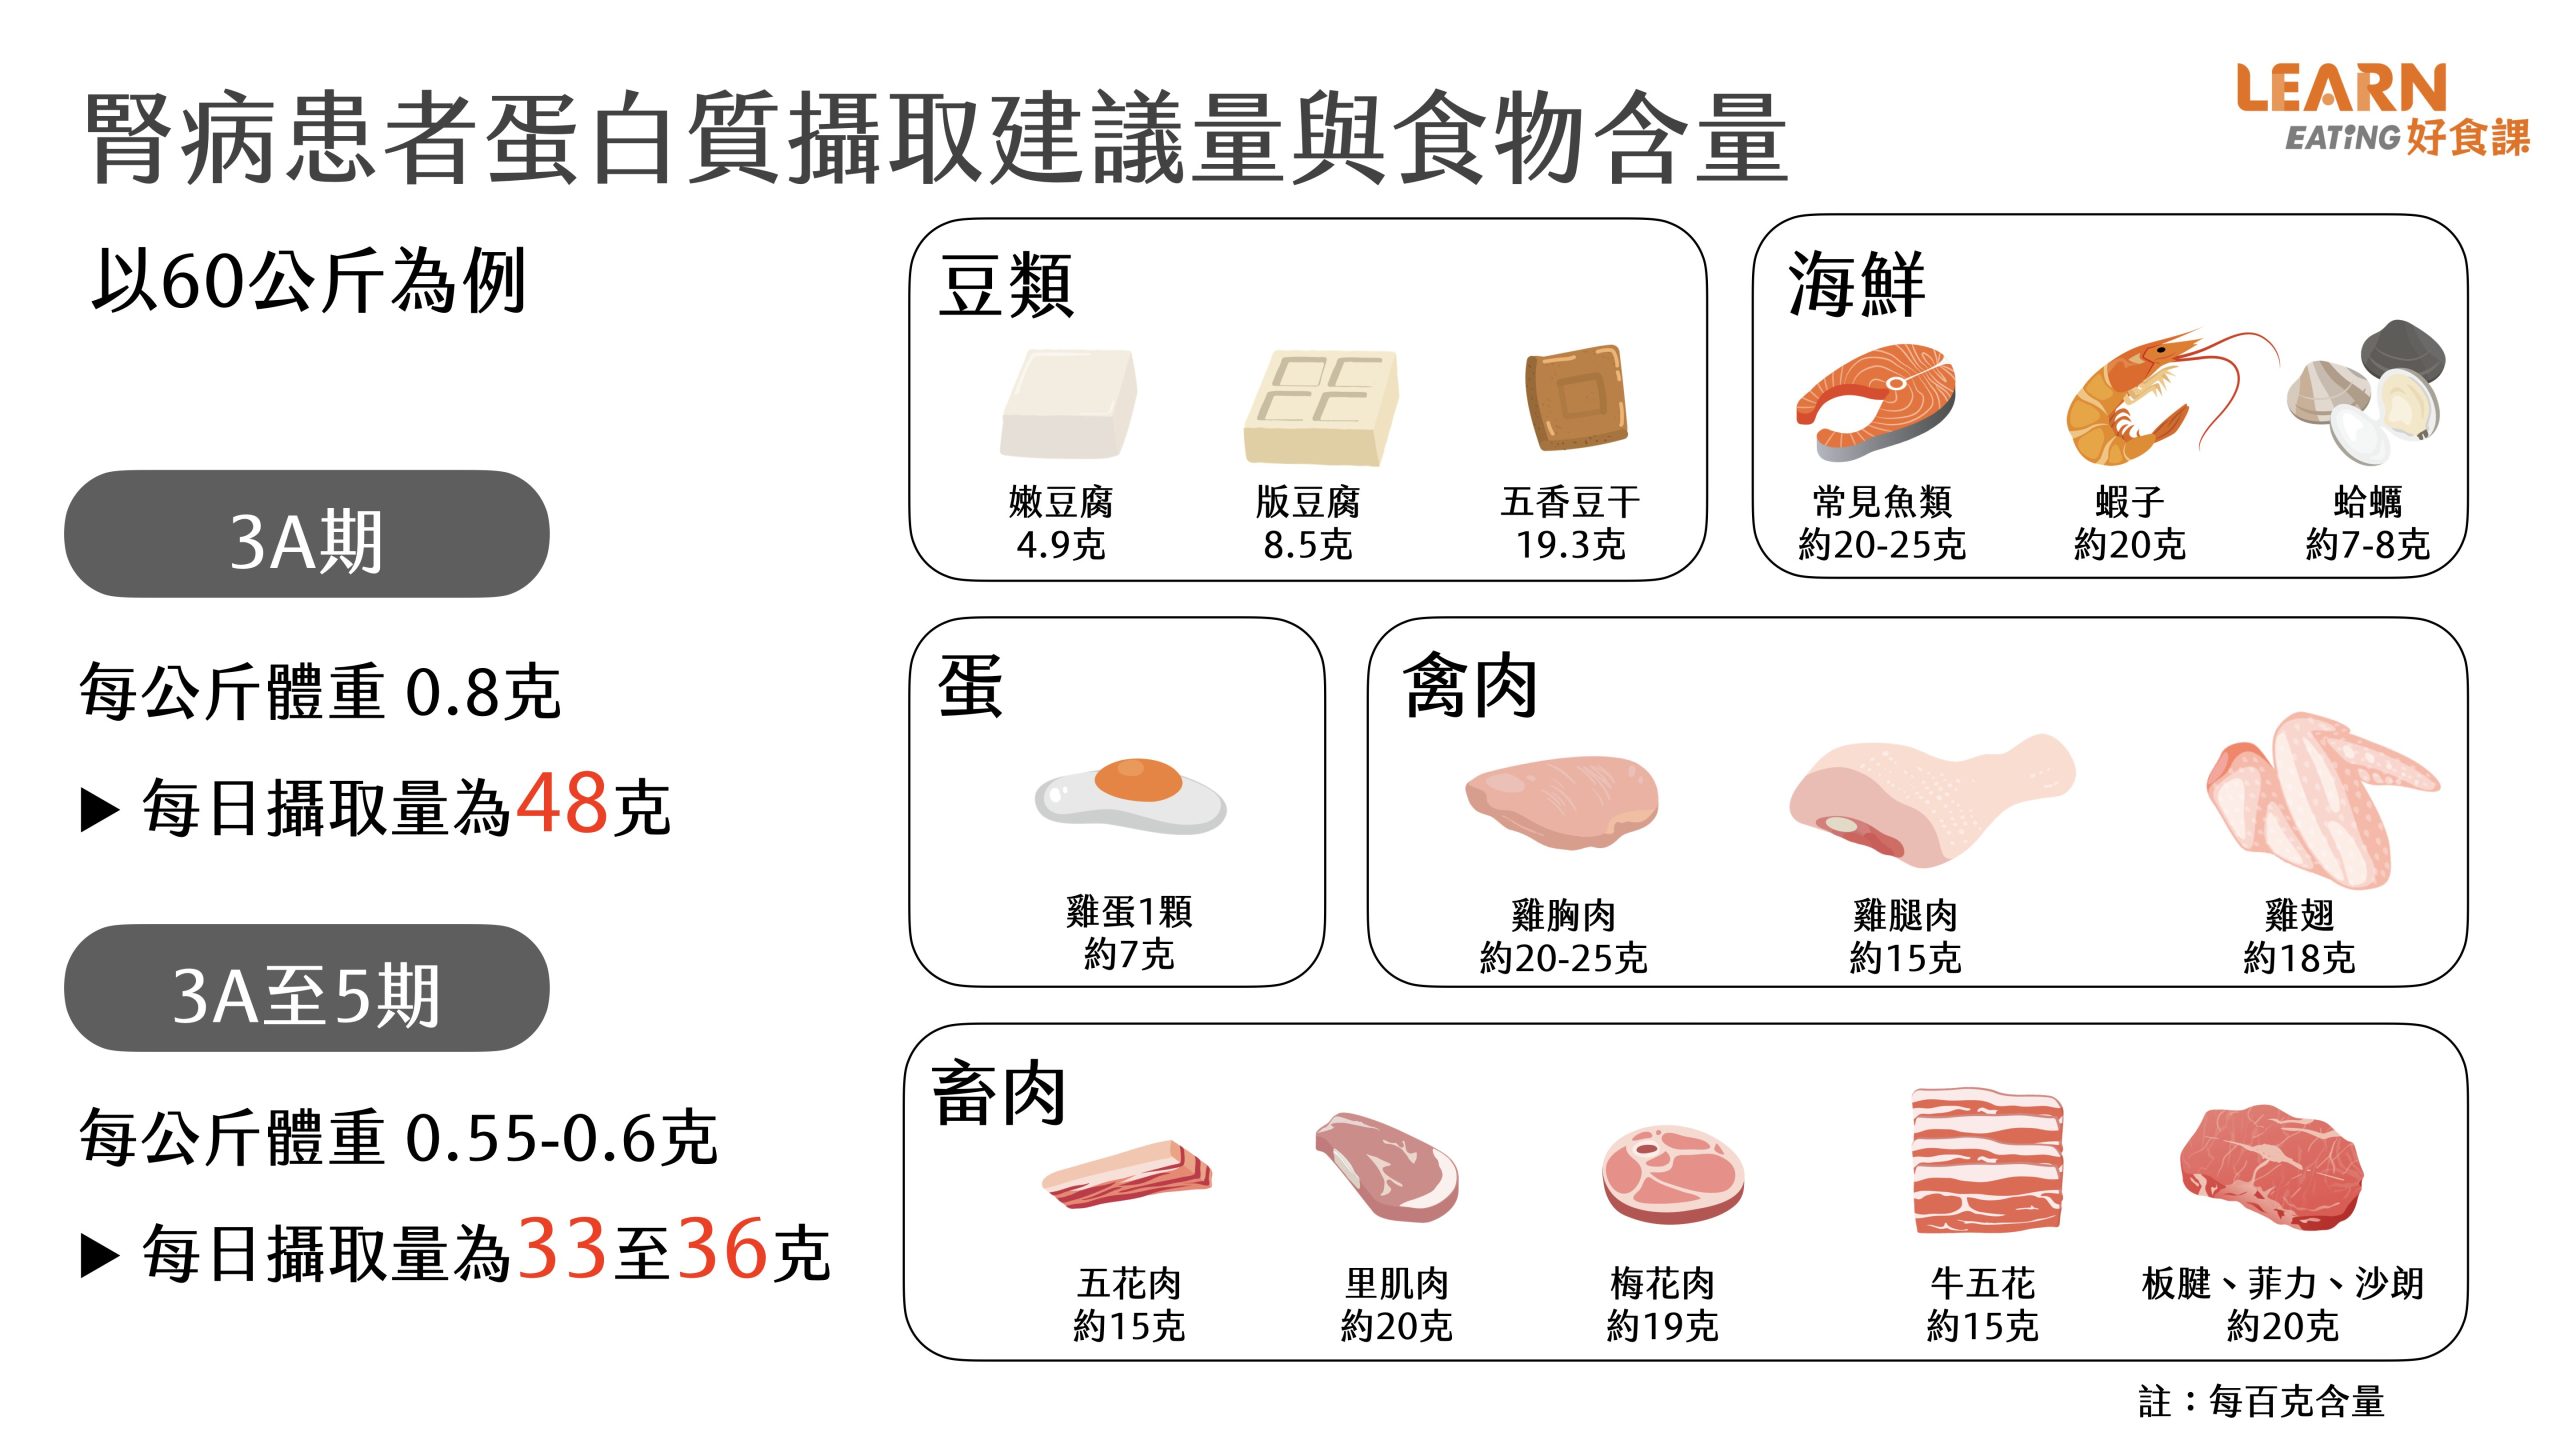 腎臟病-低蛋白-食材-慢性腎臟病-肉-豆腐-蛋白質